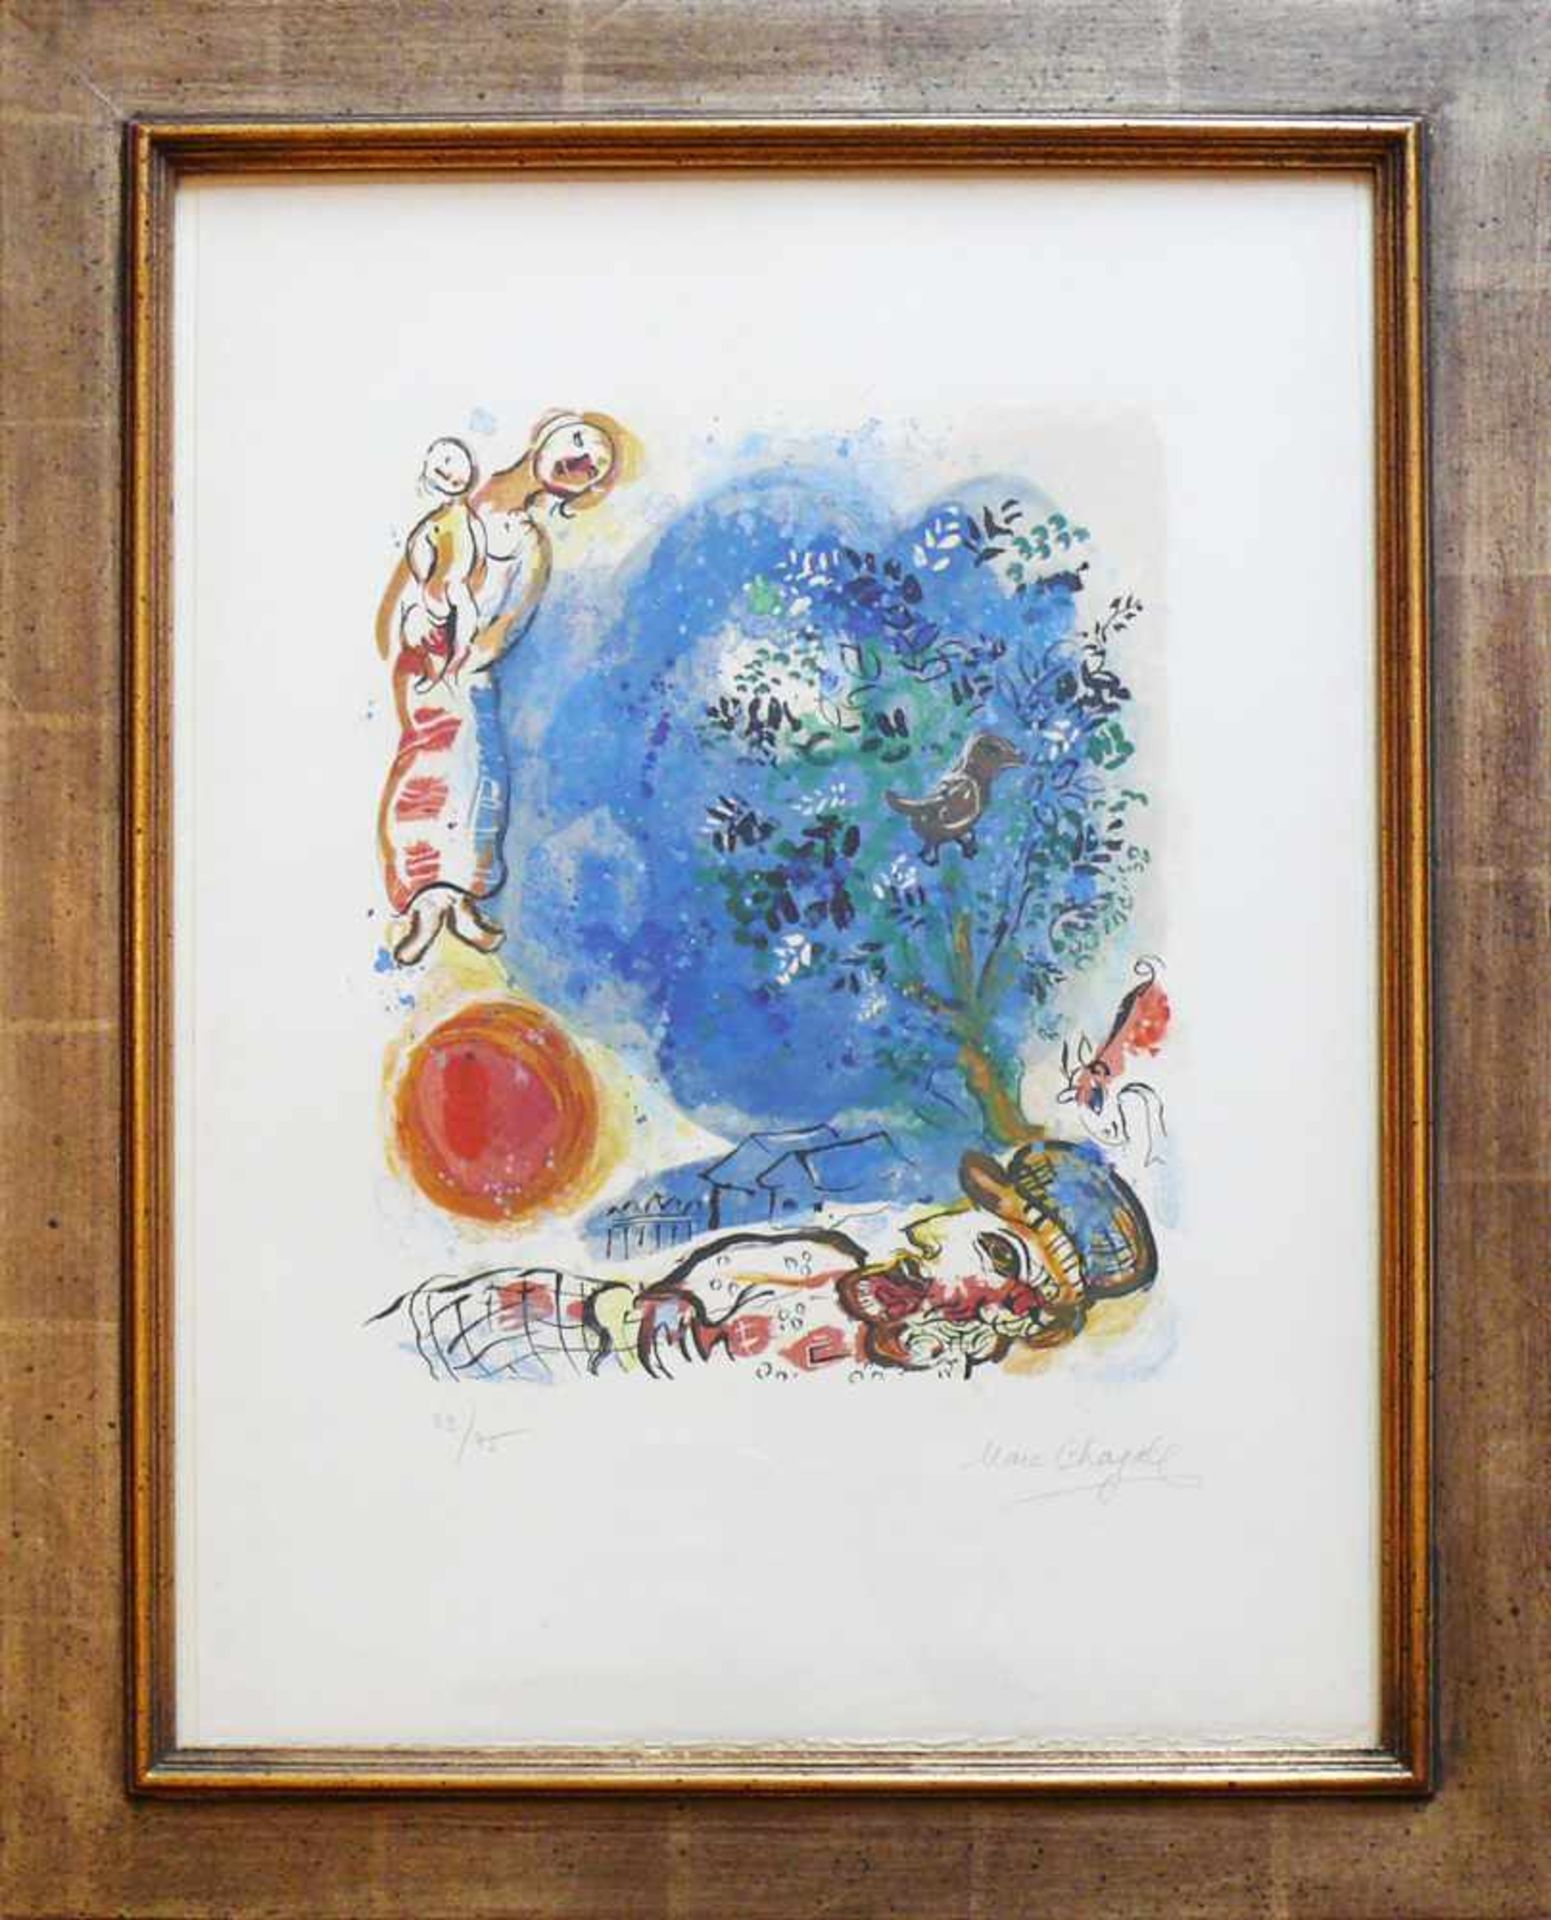 Chagall, Marc (1887 Witebsk - 1985 Paul de Vence)